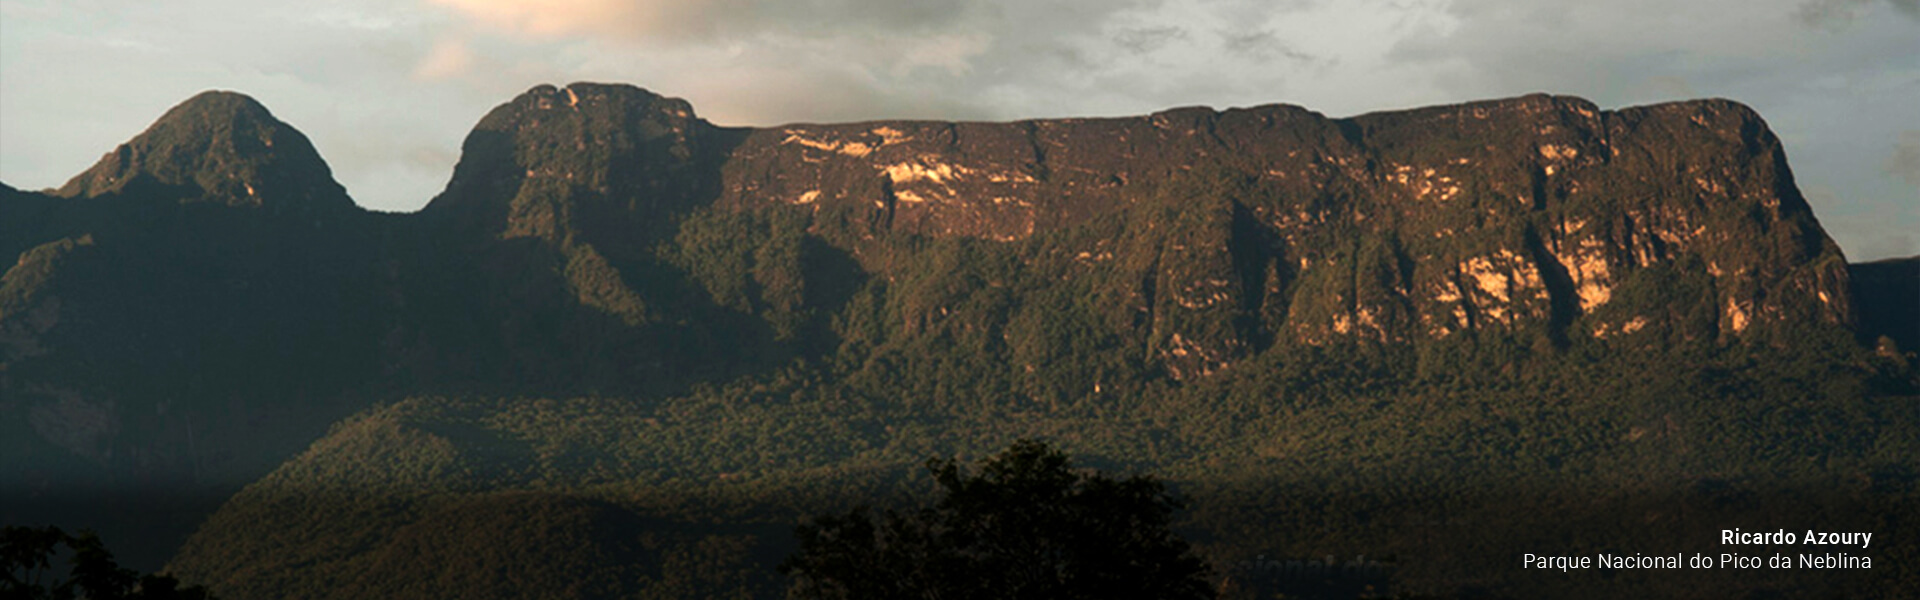 carrossel/Parque Nacional do Pico da Neblina.jpg